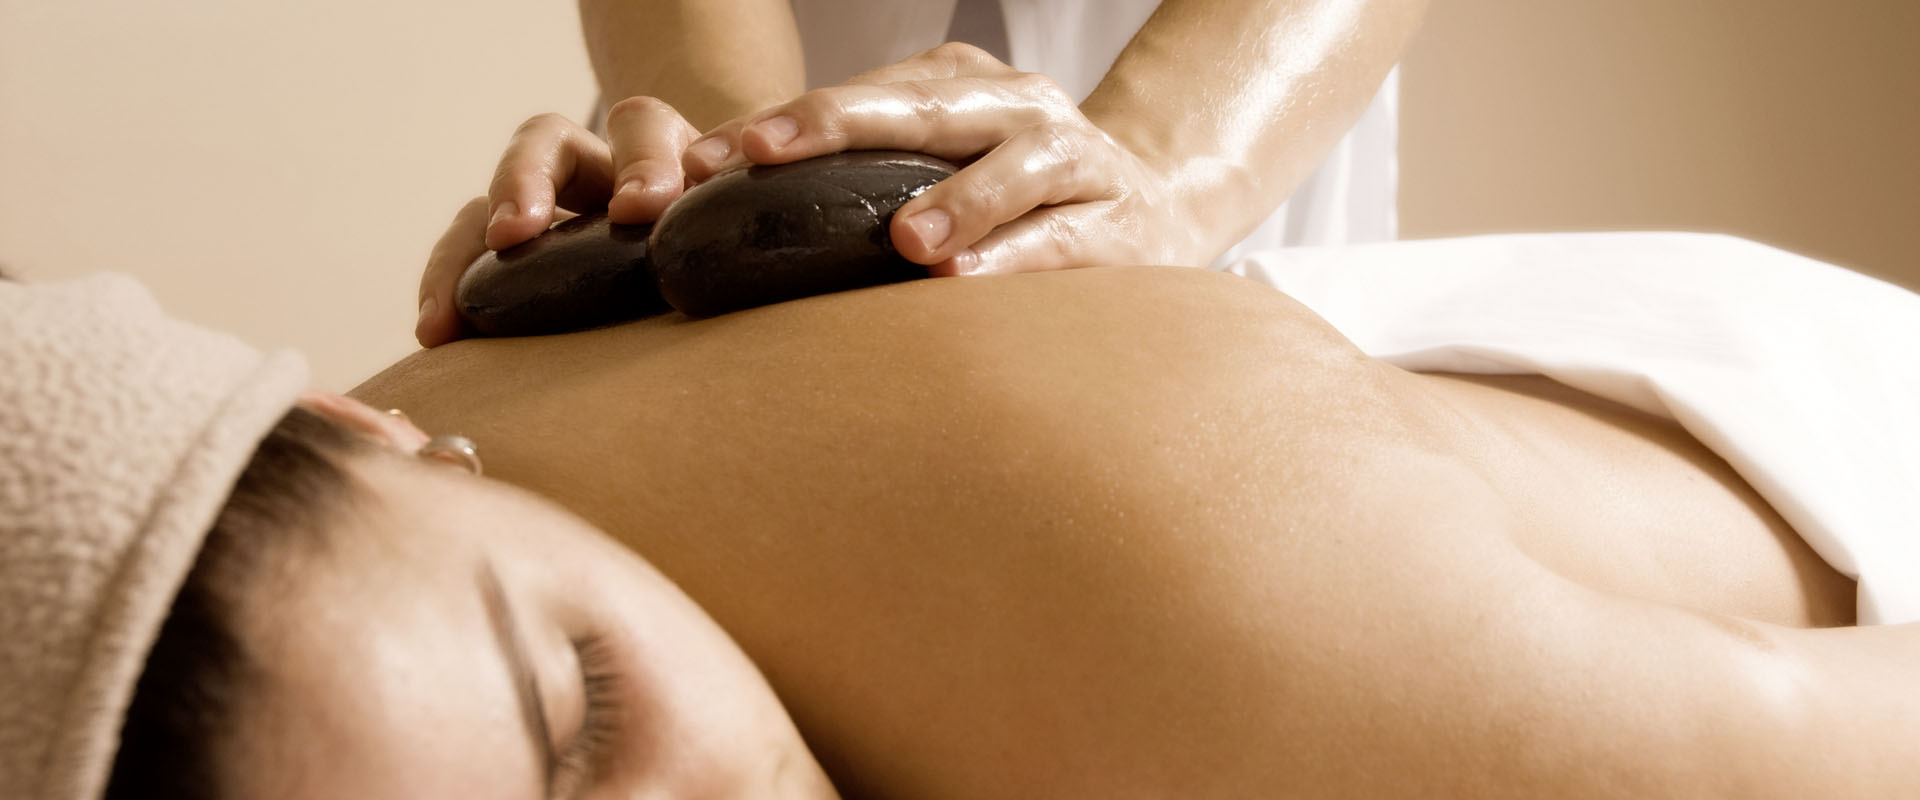 Massage- und Wellnesstherapeut